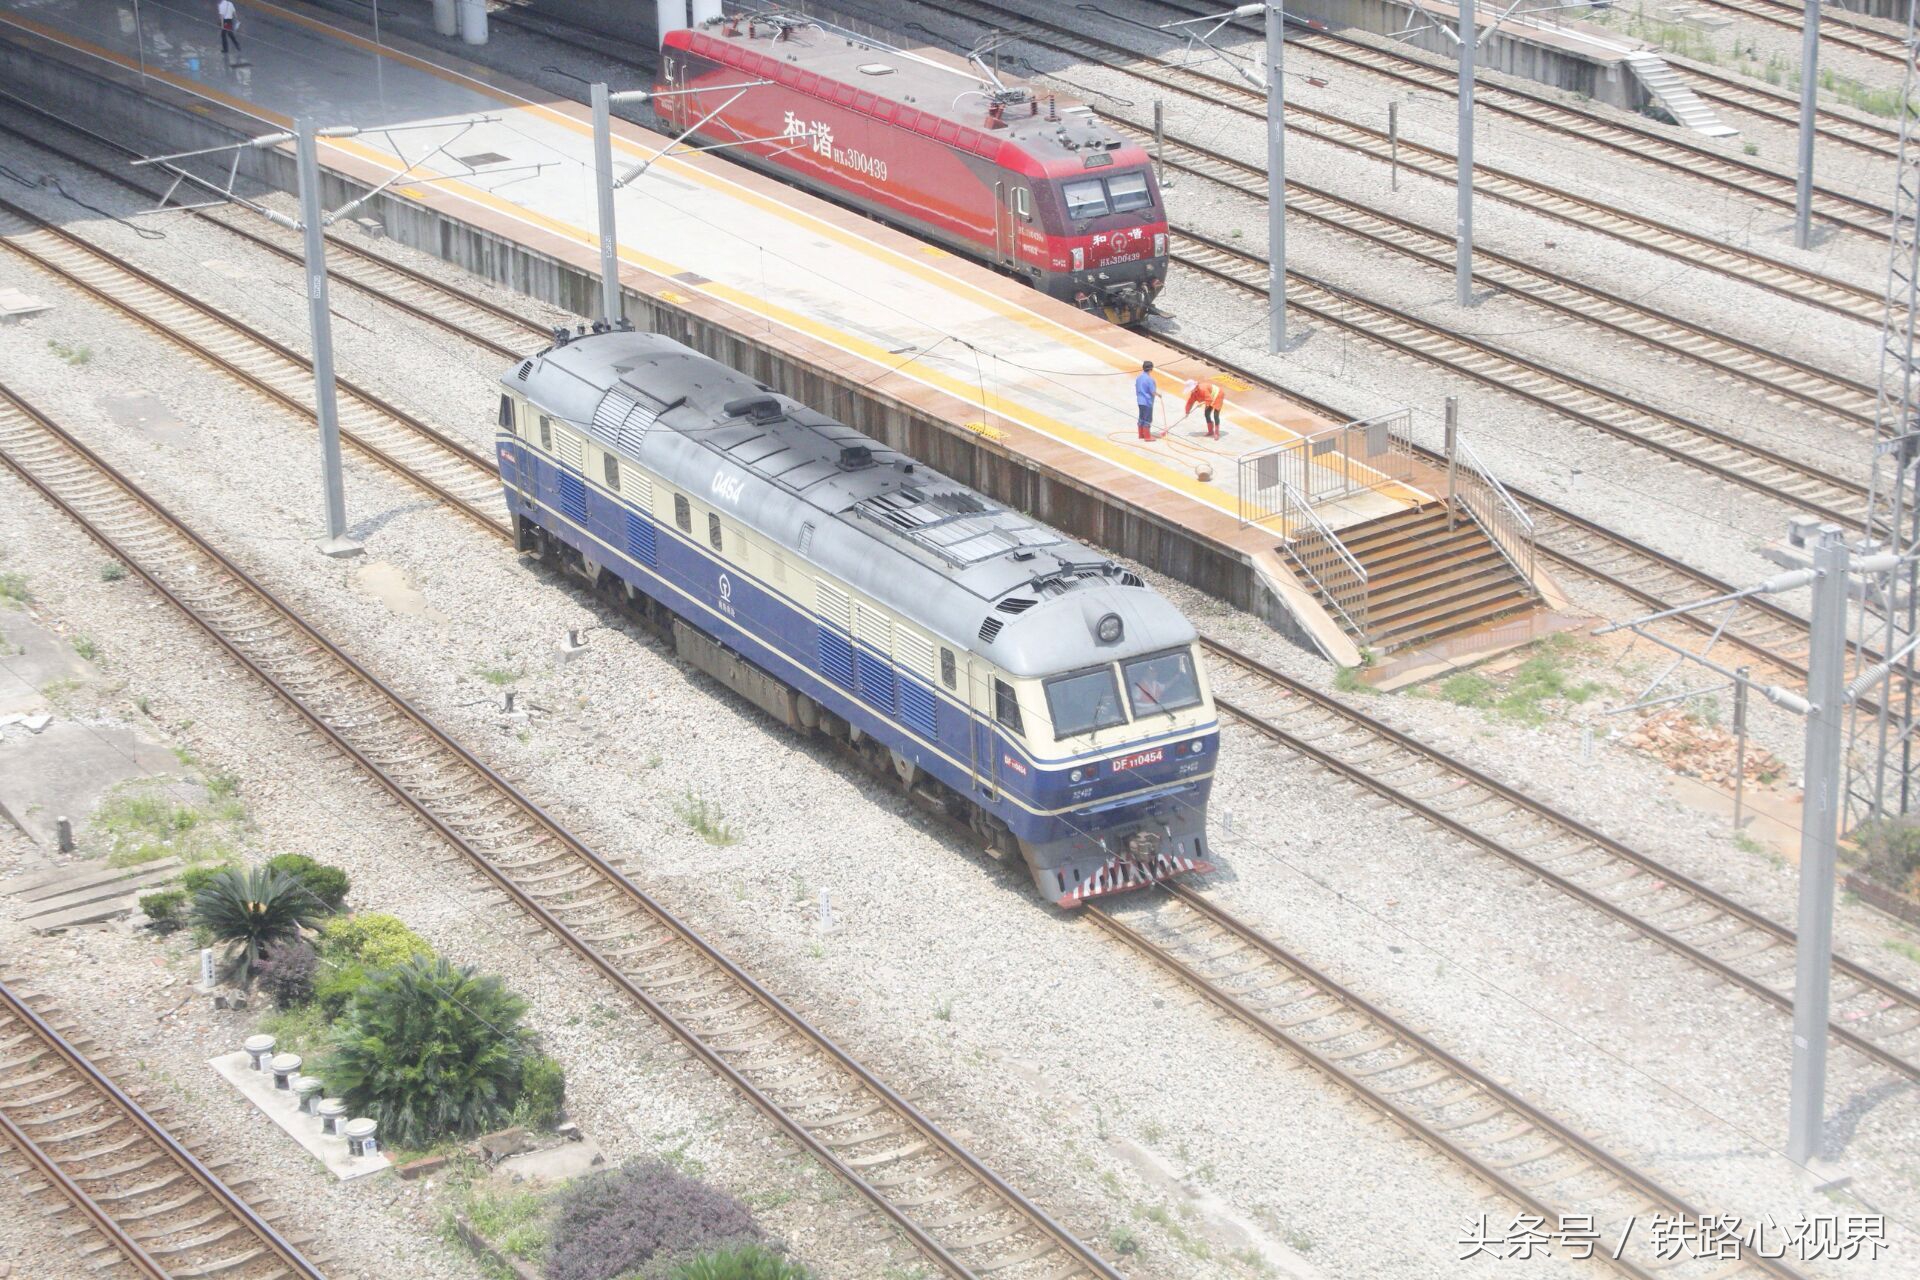 中国铁路第四次大提速主力机车,"狮子"特辑(df11内燃机车)